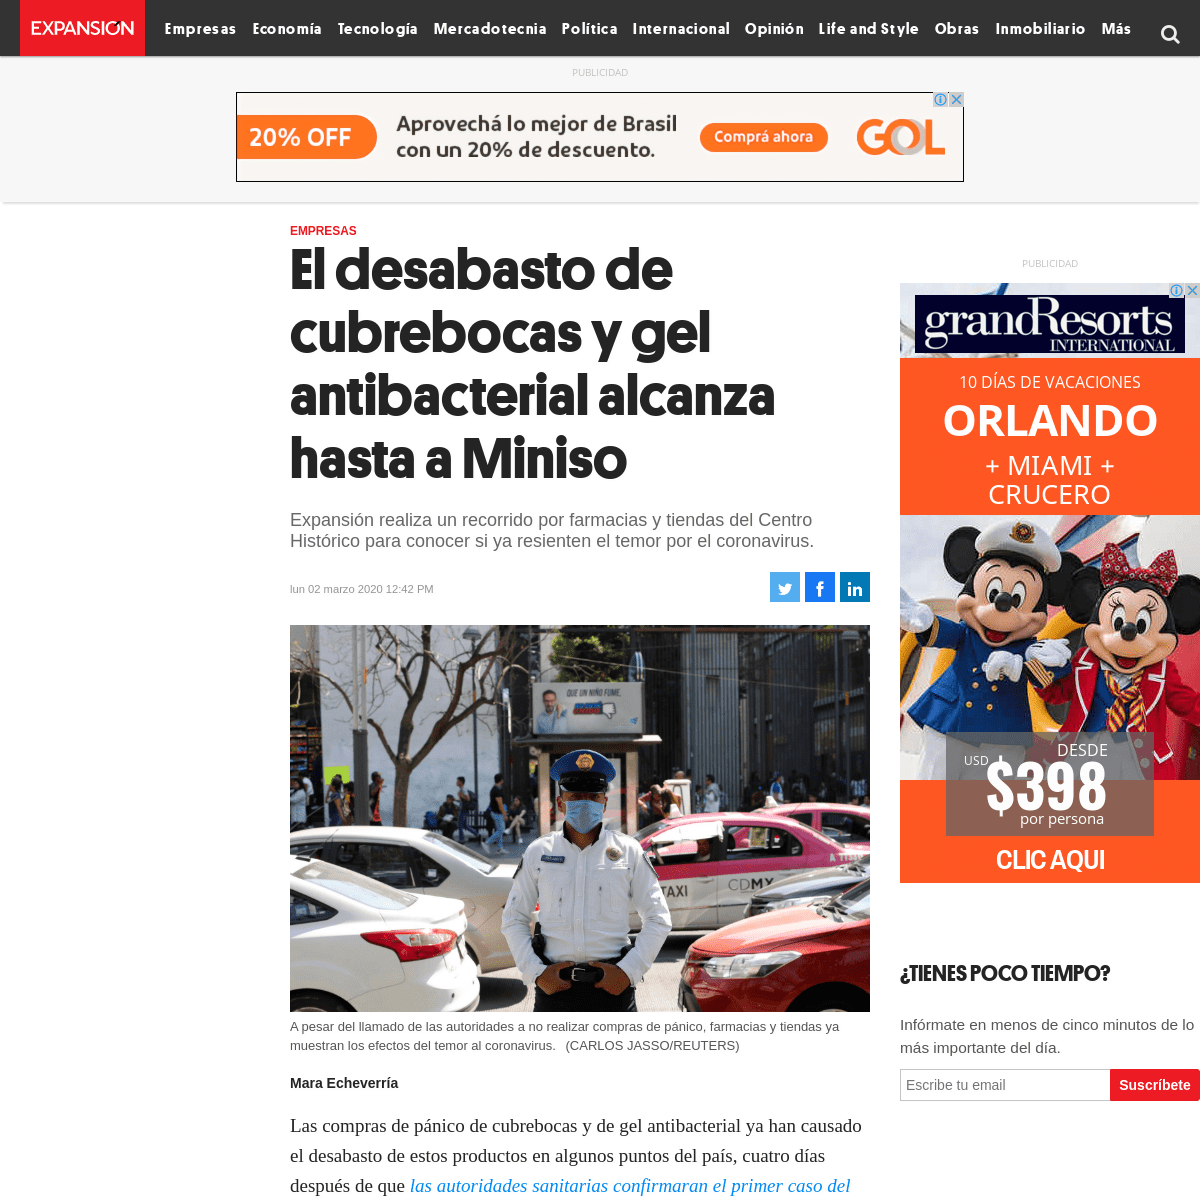 A complete backup of expansion.mx/empresas/2020/03/02/el-desabasto-de-cubrebocas-y-gel-antibacterial-alcanza-hasta-a-miniso